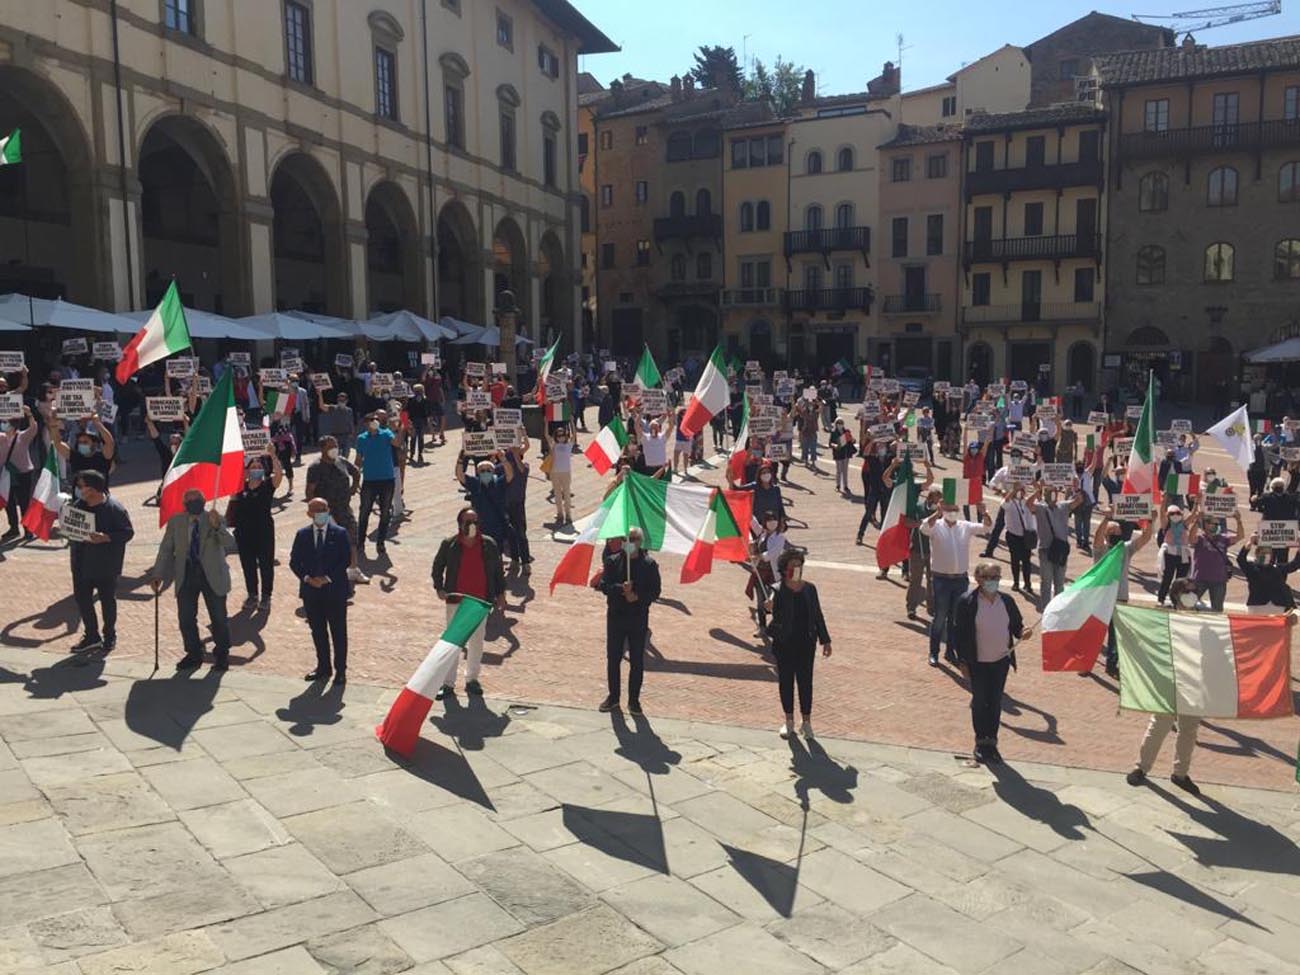 Centro destra, flash mob in piazza Grande. La diretta